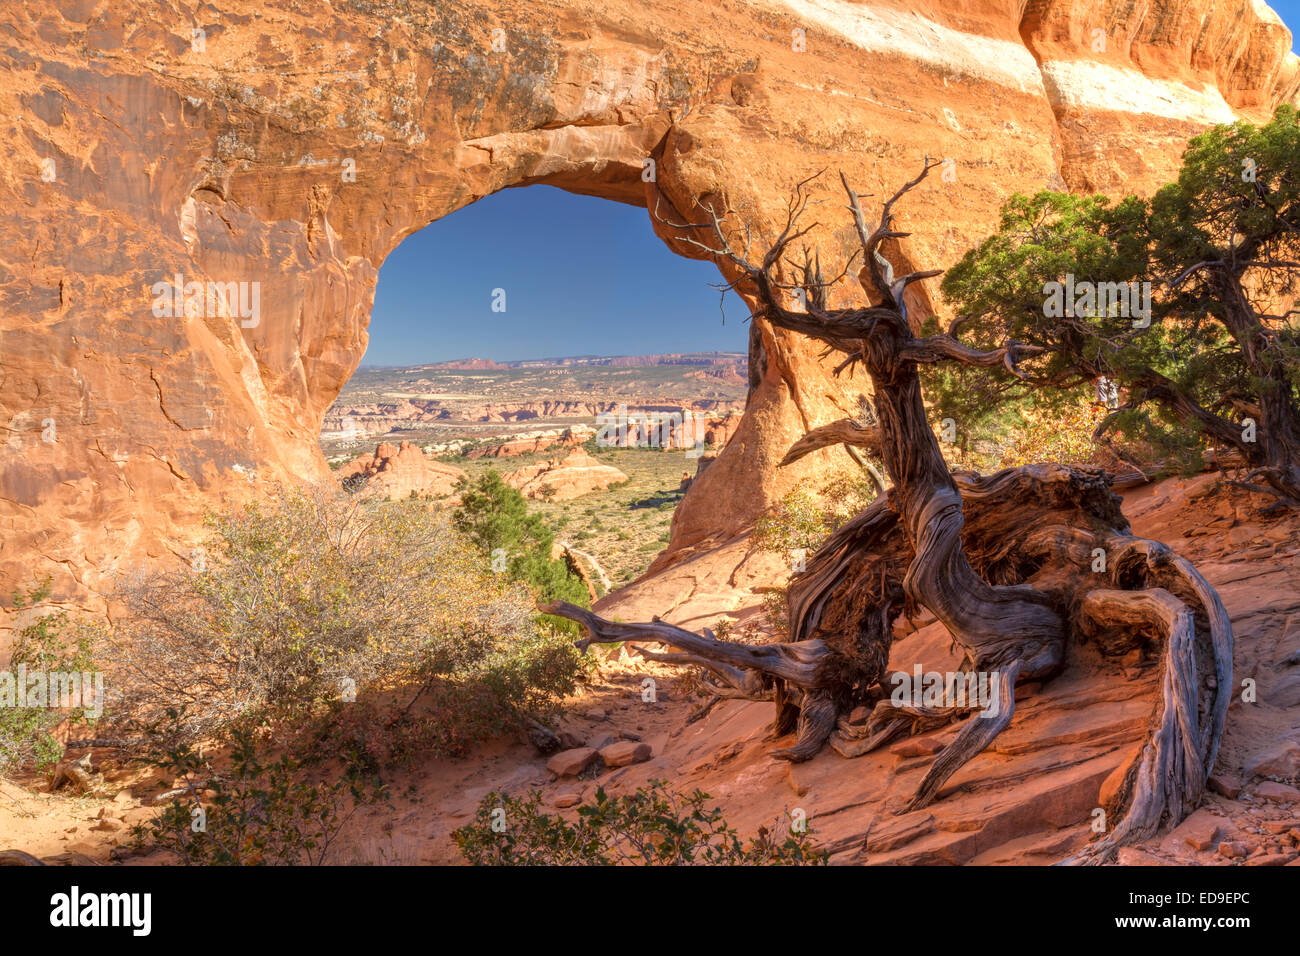 Ein HNO-wie anthropomorphe Juniper Tree Wachen Partition Arch in des Teufels Garten Abschnitt des Arches-Nationalpark in Moab Uta Stockfoto